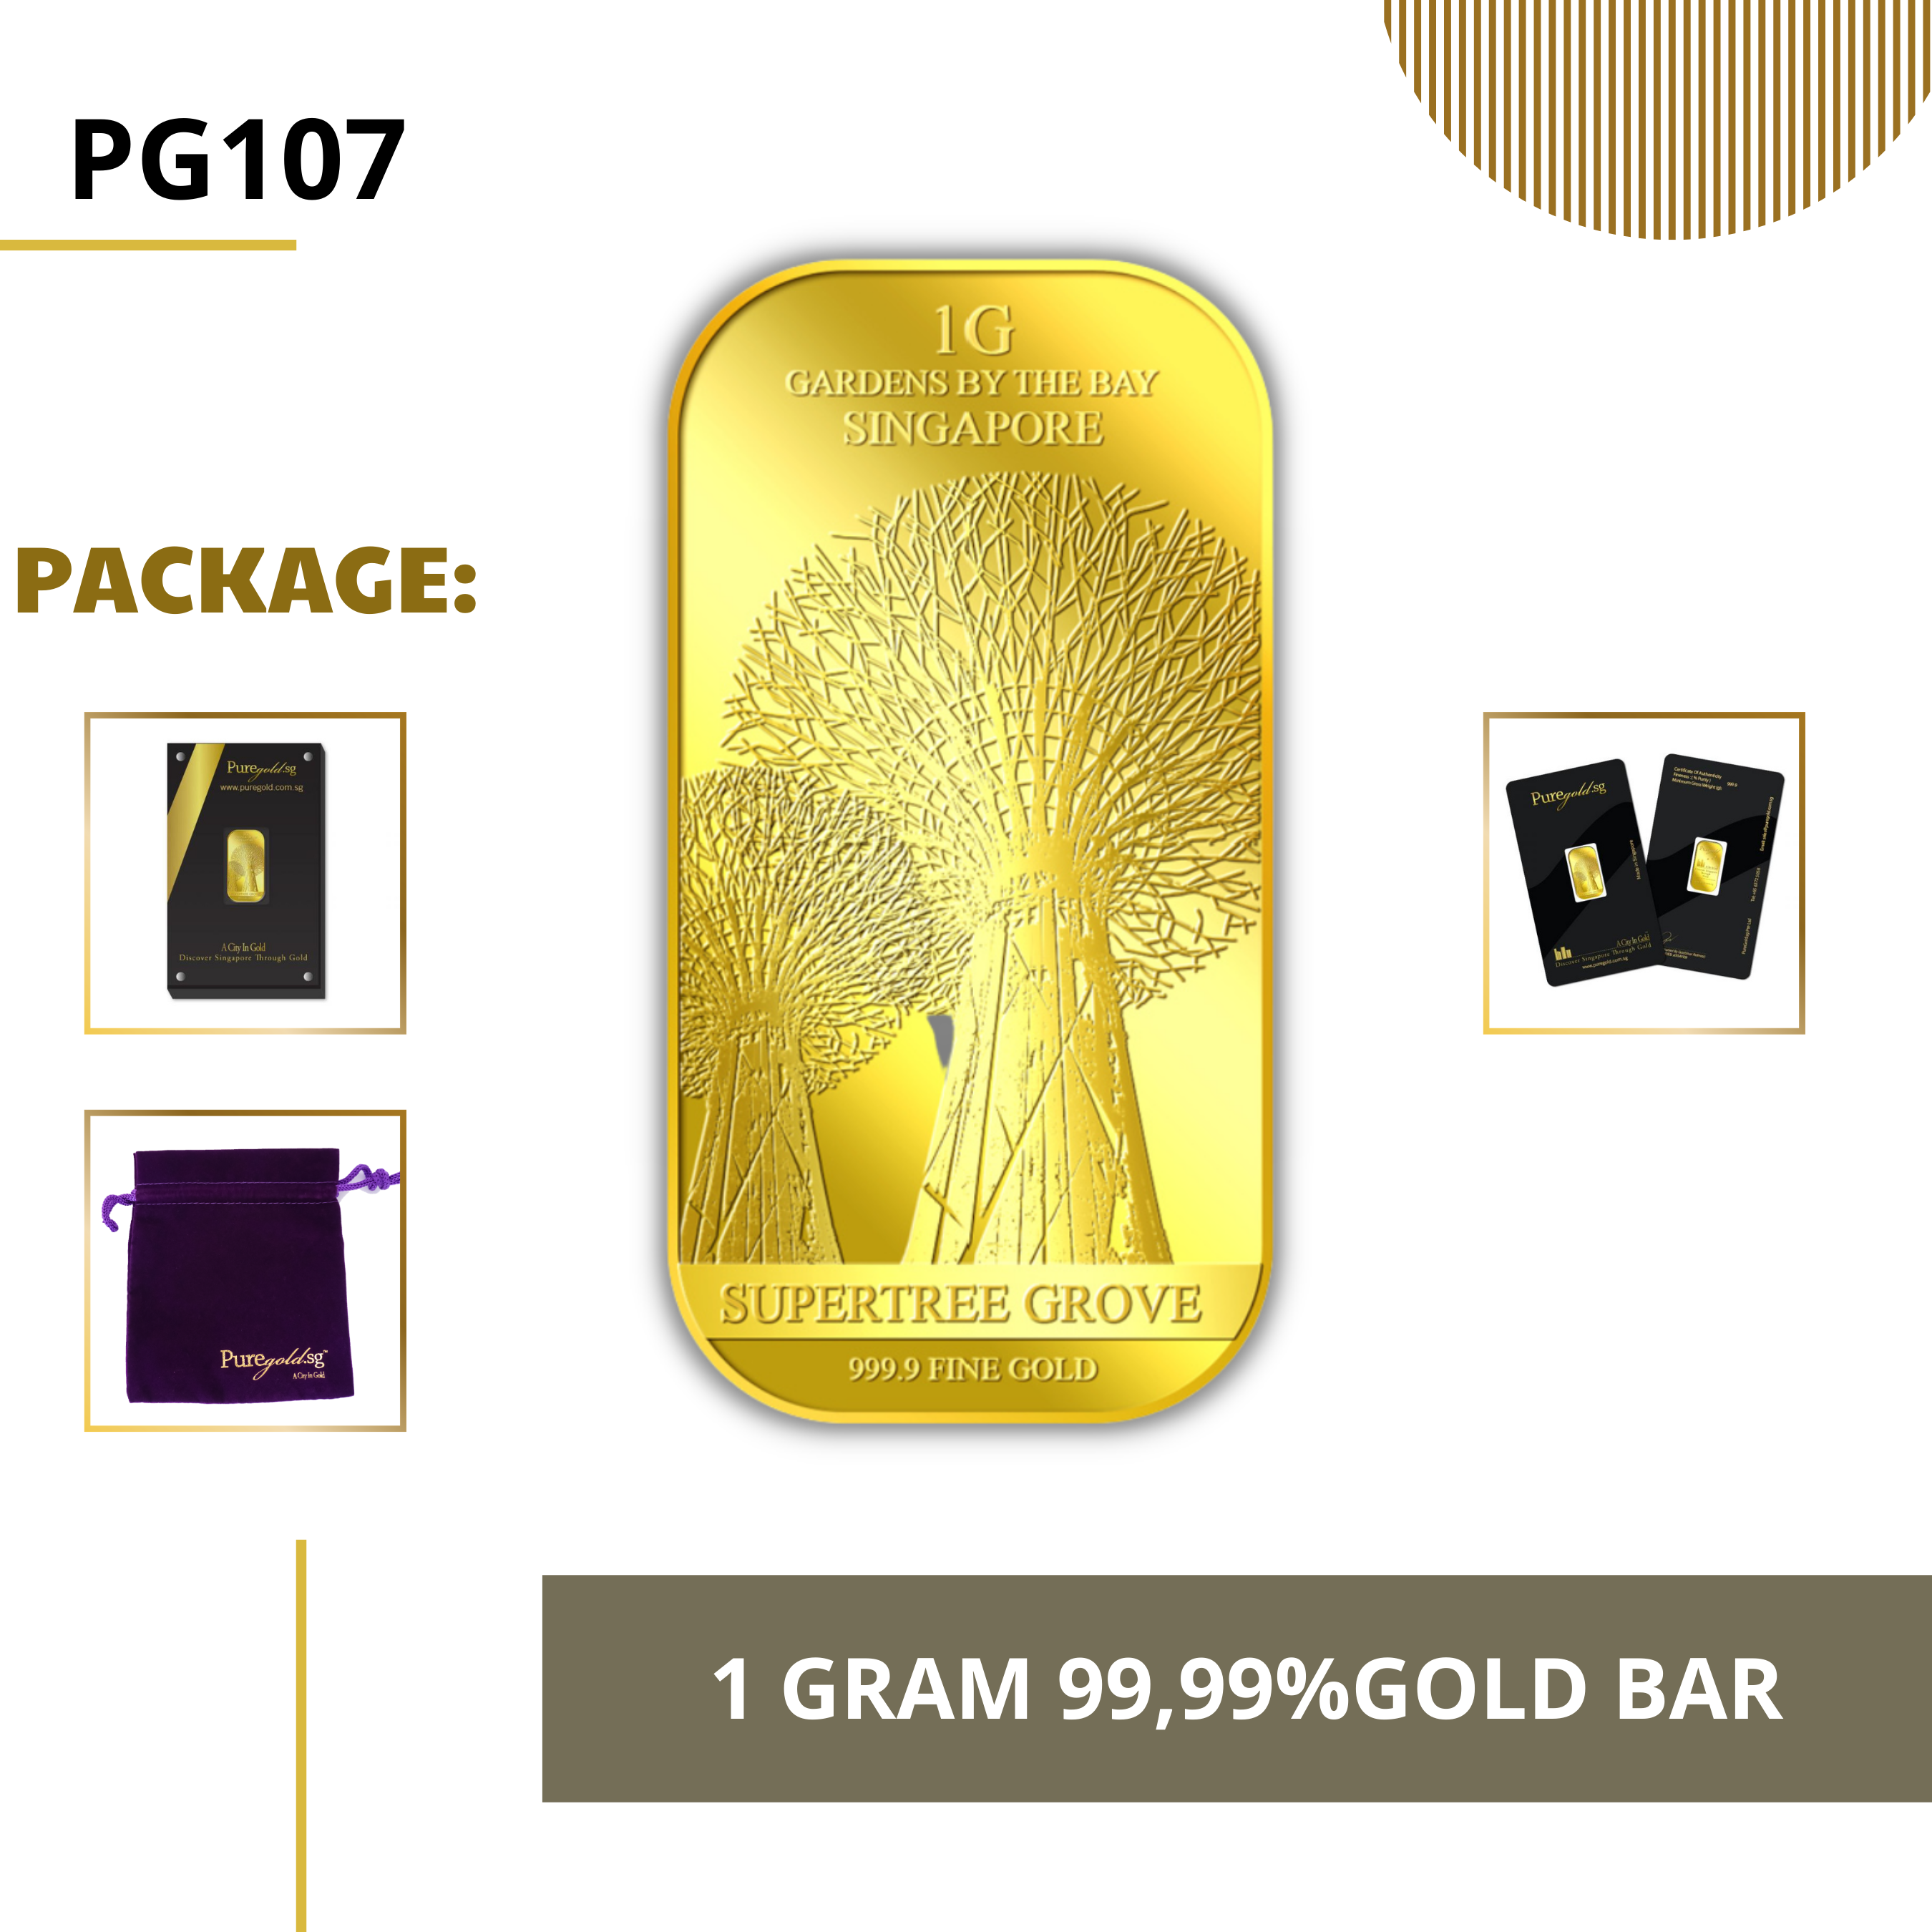 PURE GOLD 99.99% ทองคำแท่ง / 1Gram ST -SG Supertree gold bar/ ทองคำแท้จากสิงคโปร์ / ทองคำ 1 กรัม / ทอง 99.99% *การันตีทองแท้*